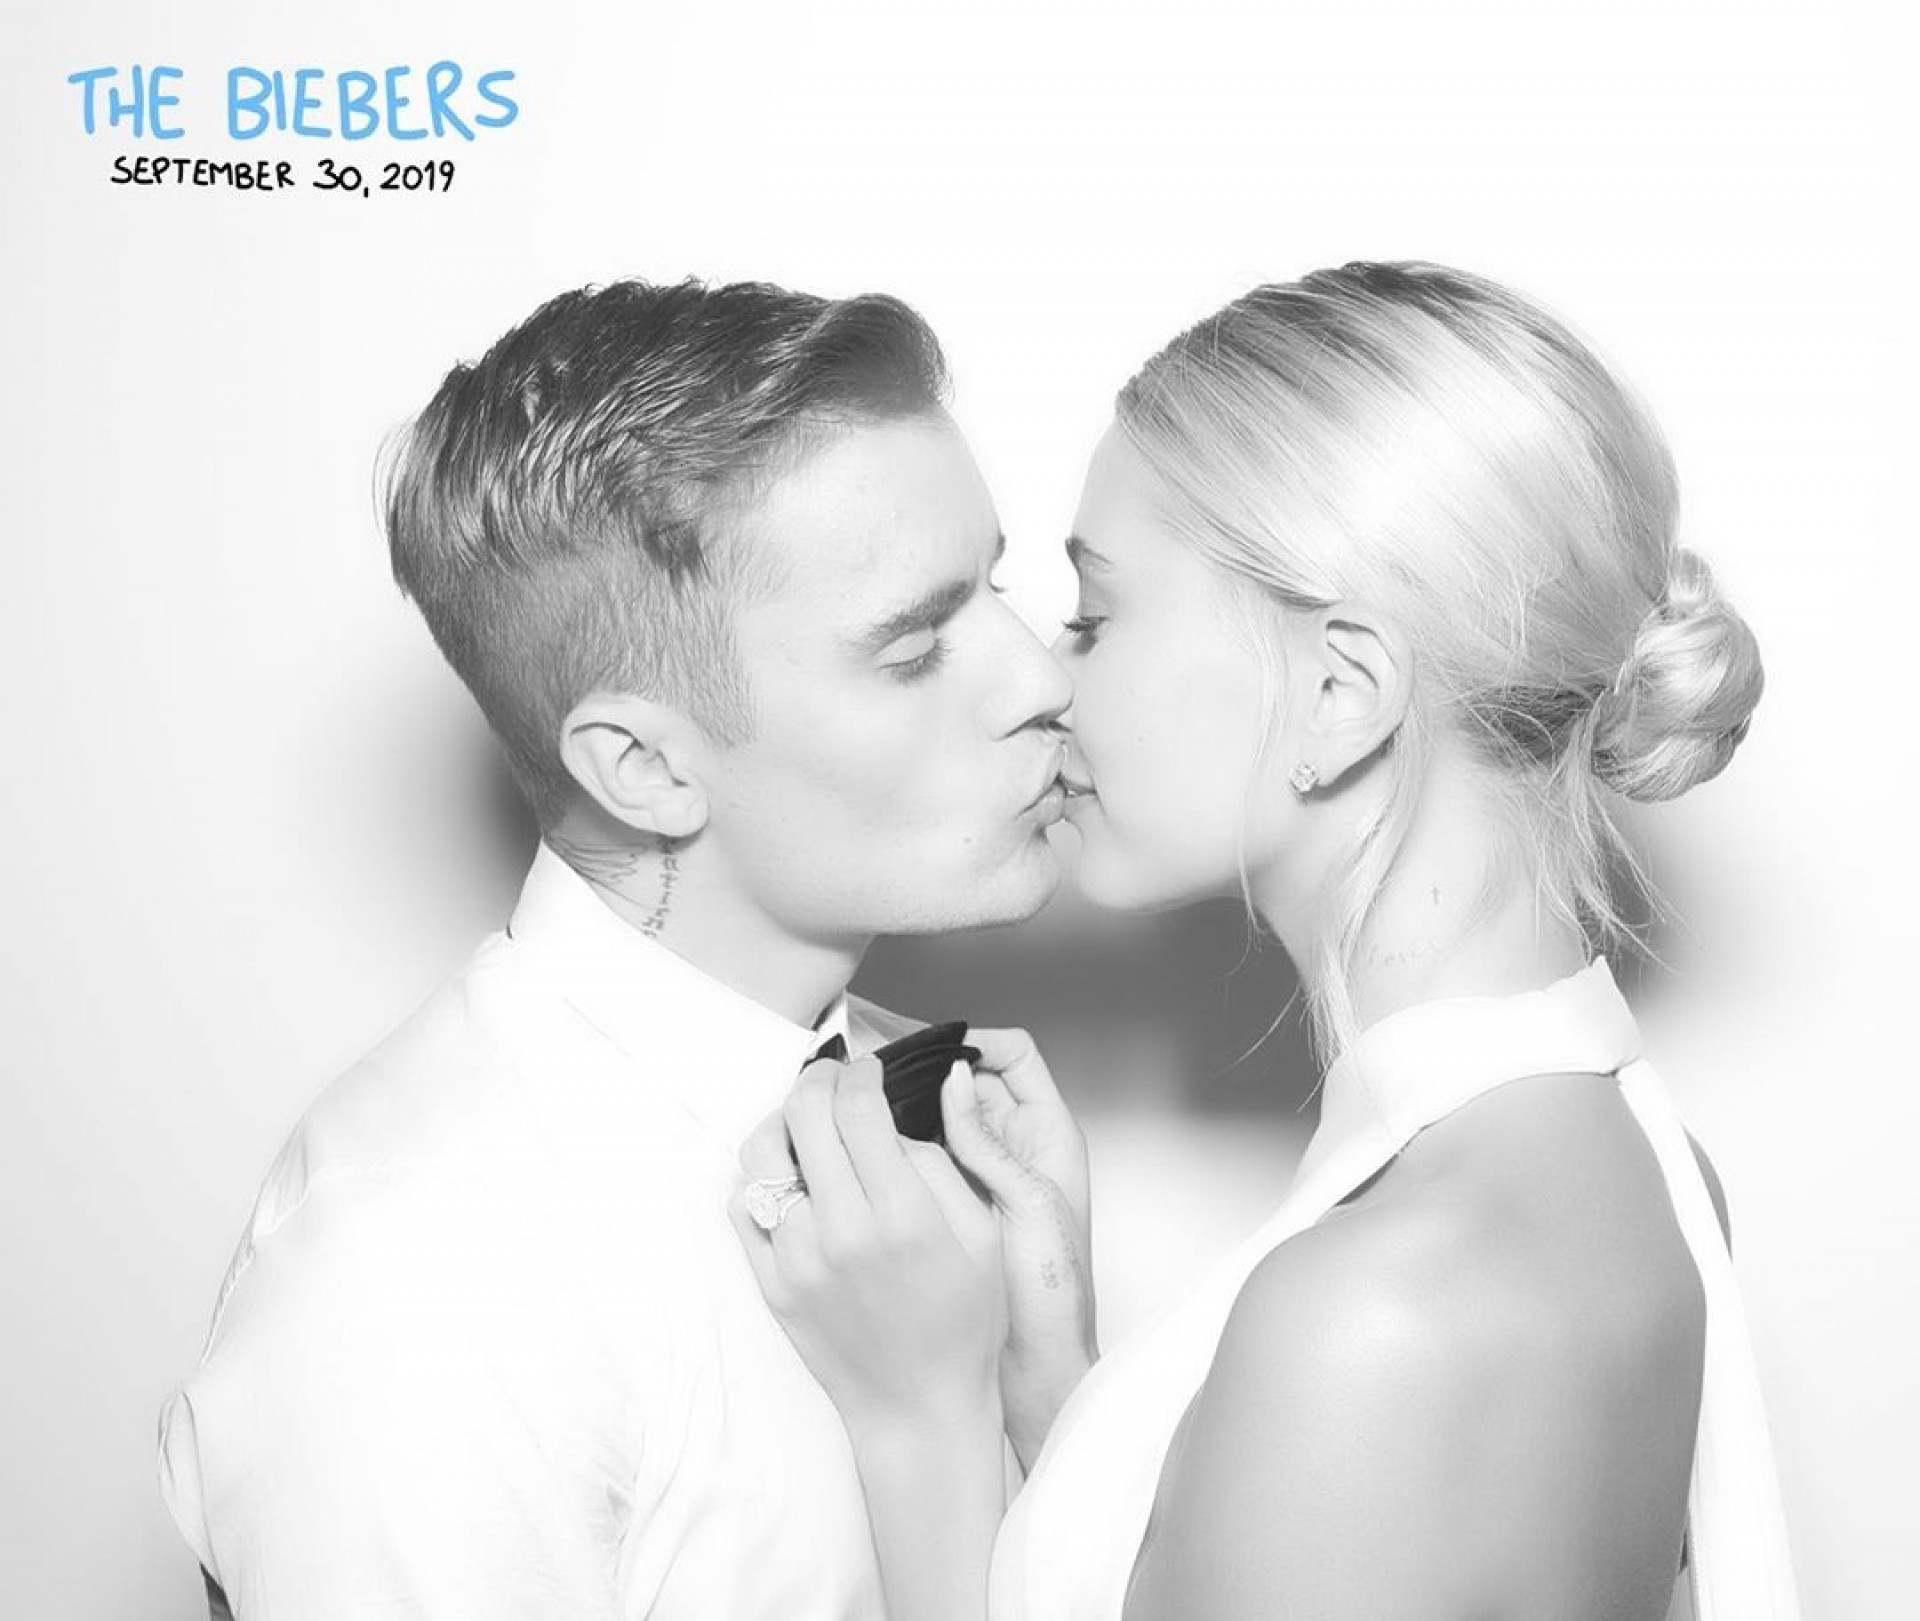 Justin Bieber e Hailey Baldwin se casam em cerimônia religiosa - Reprodução Internet